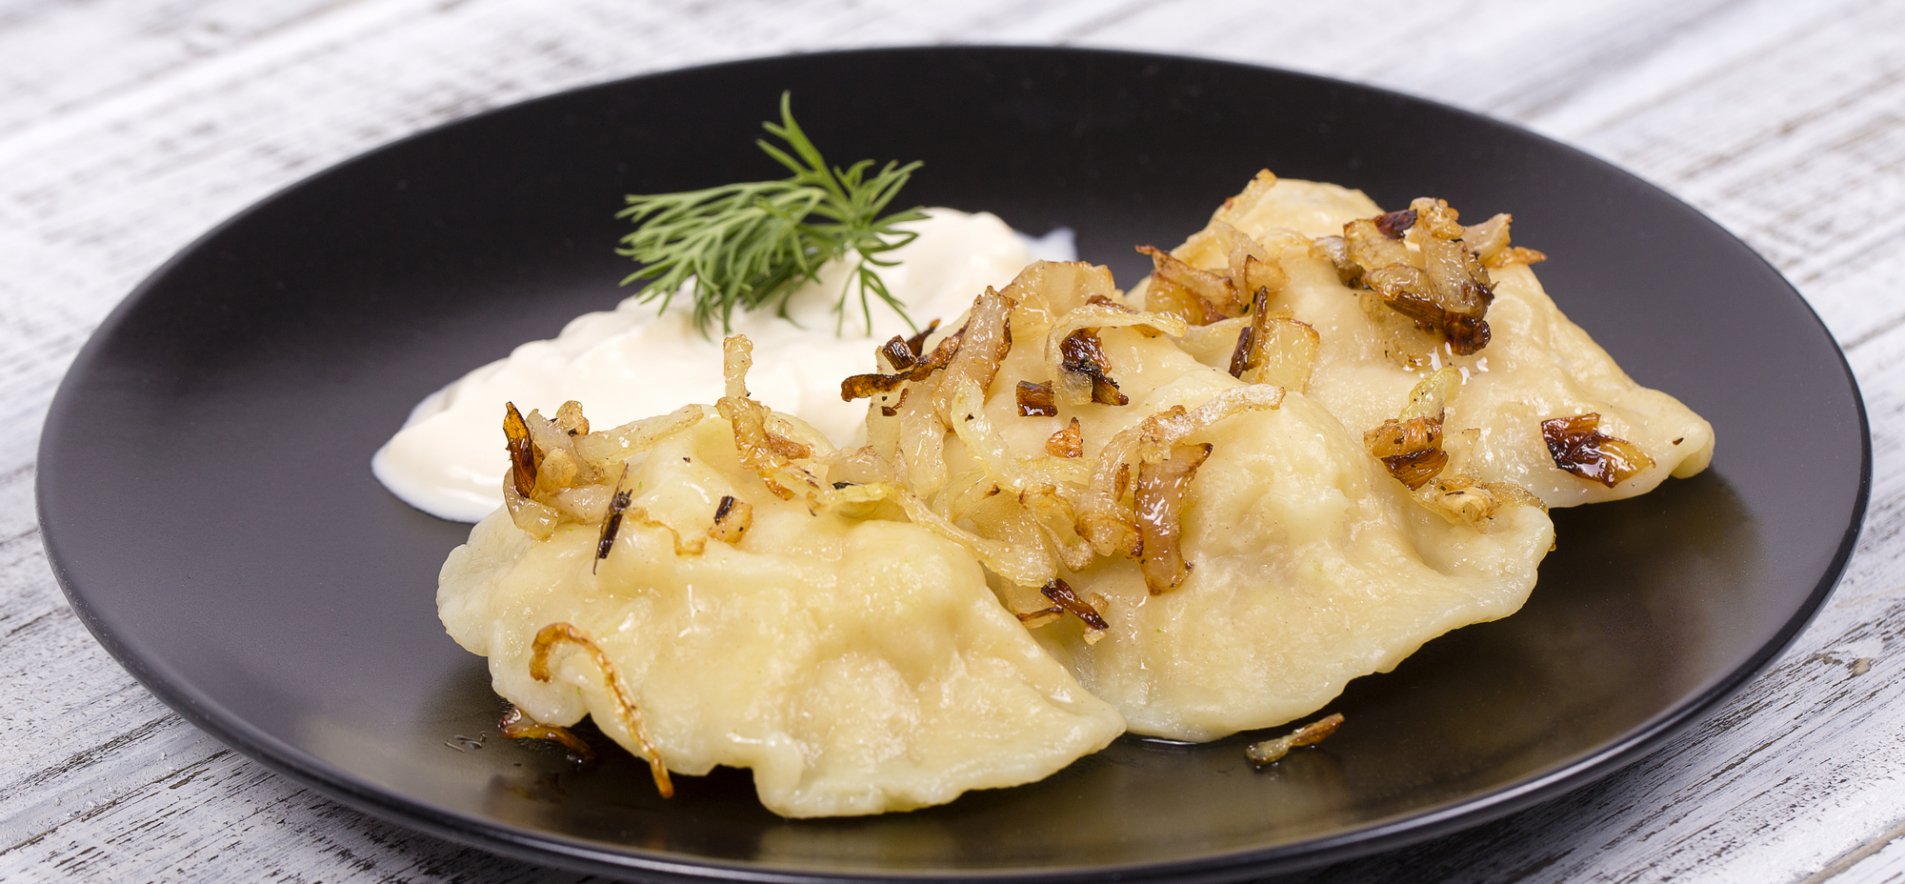 Домашние вареники с картошкой. Рецепт вареников с варёным картофелем